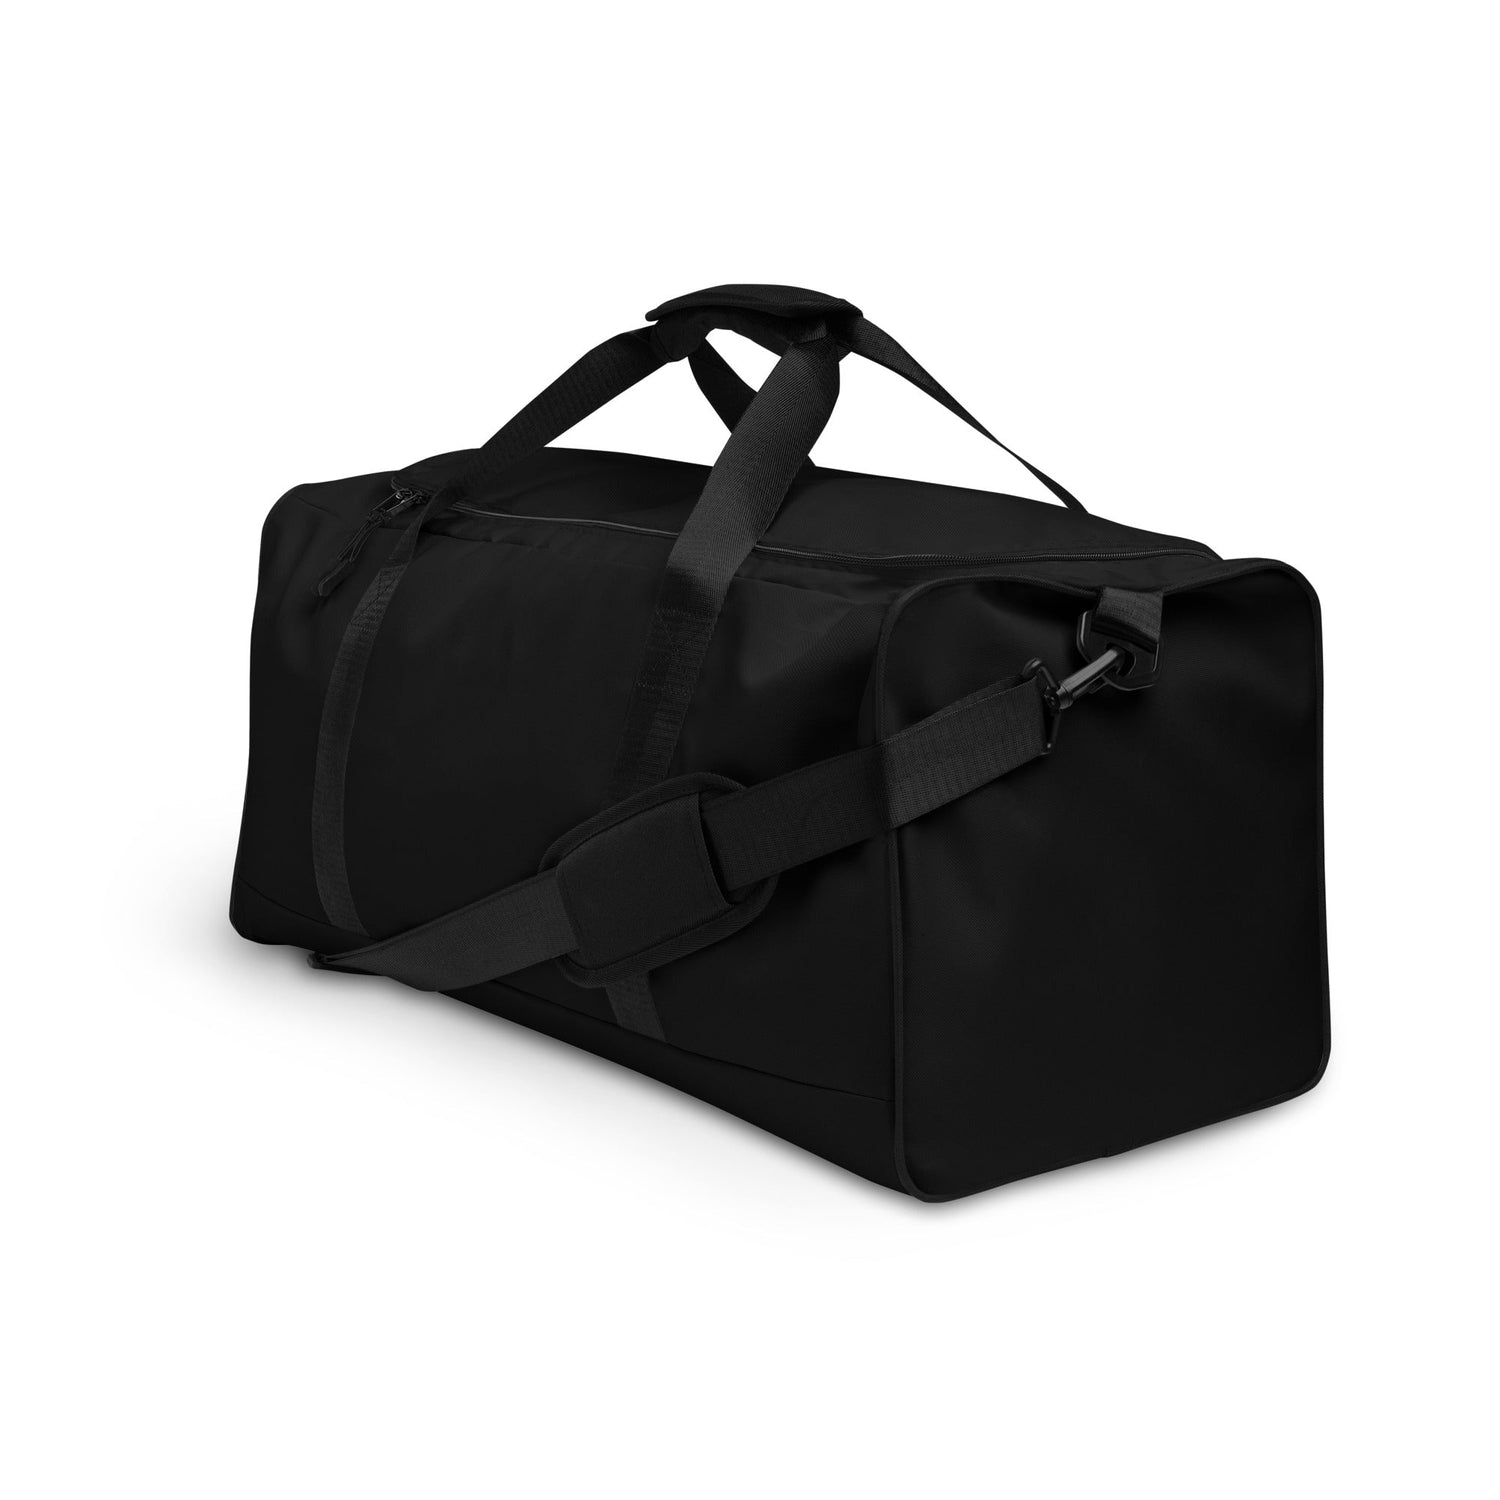 klasneakers KLA duffle bag - Jet Black